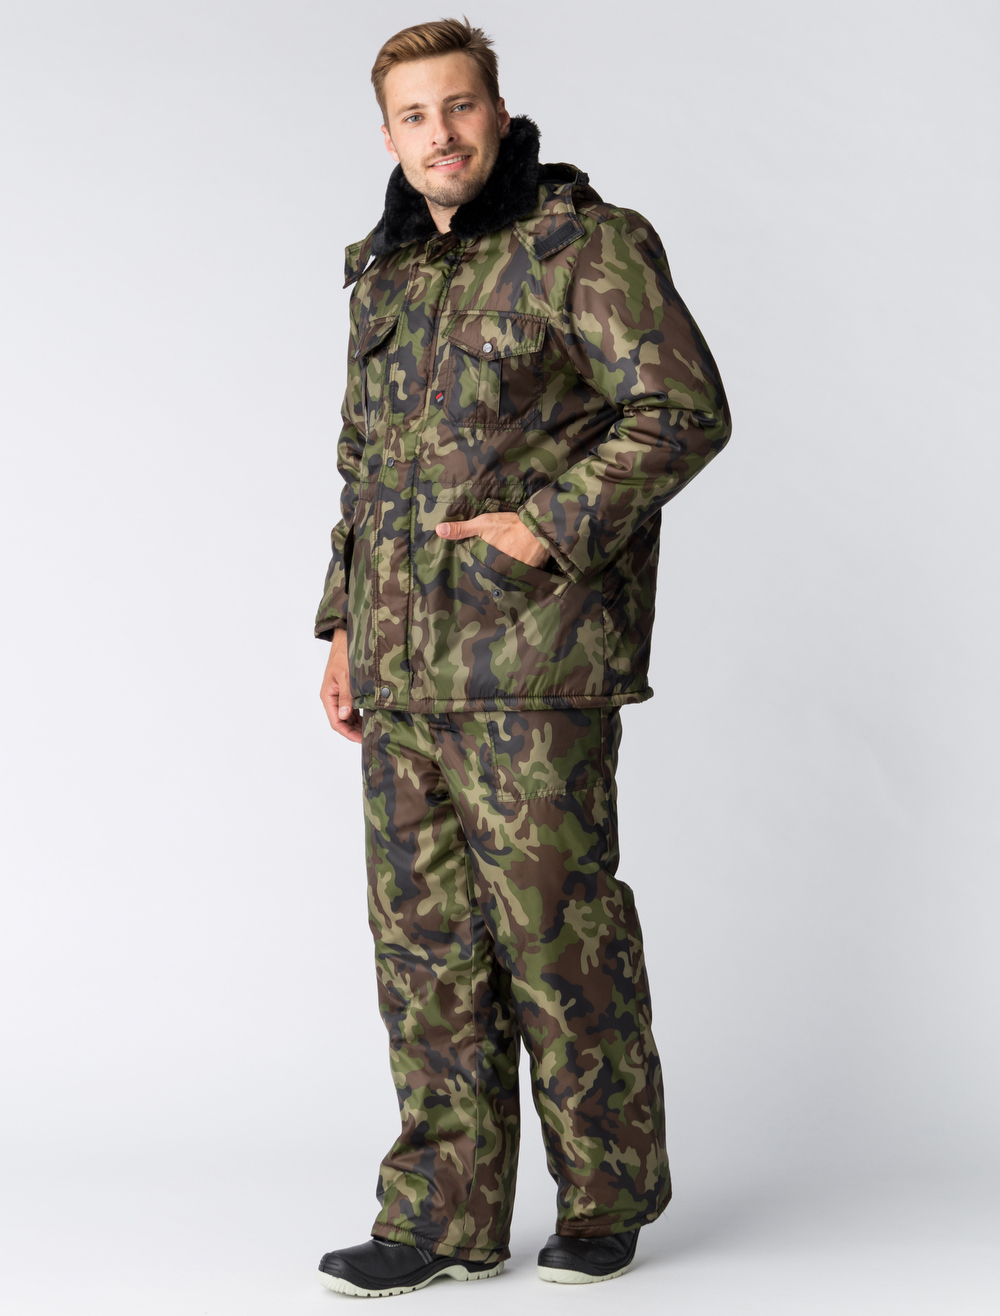 Куртка зимняя для Охранника КМФ, НАТО